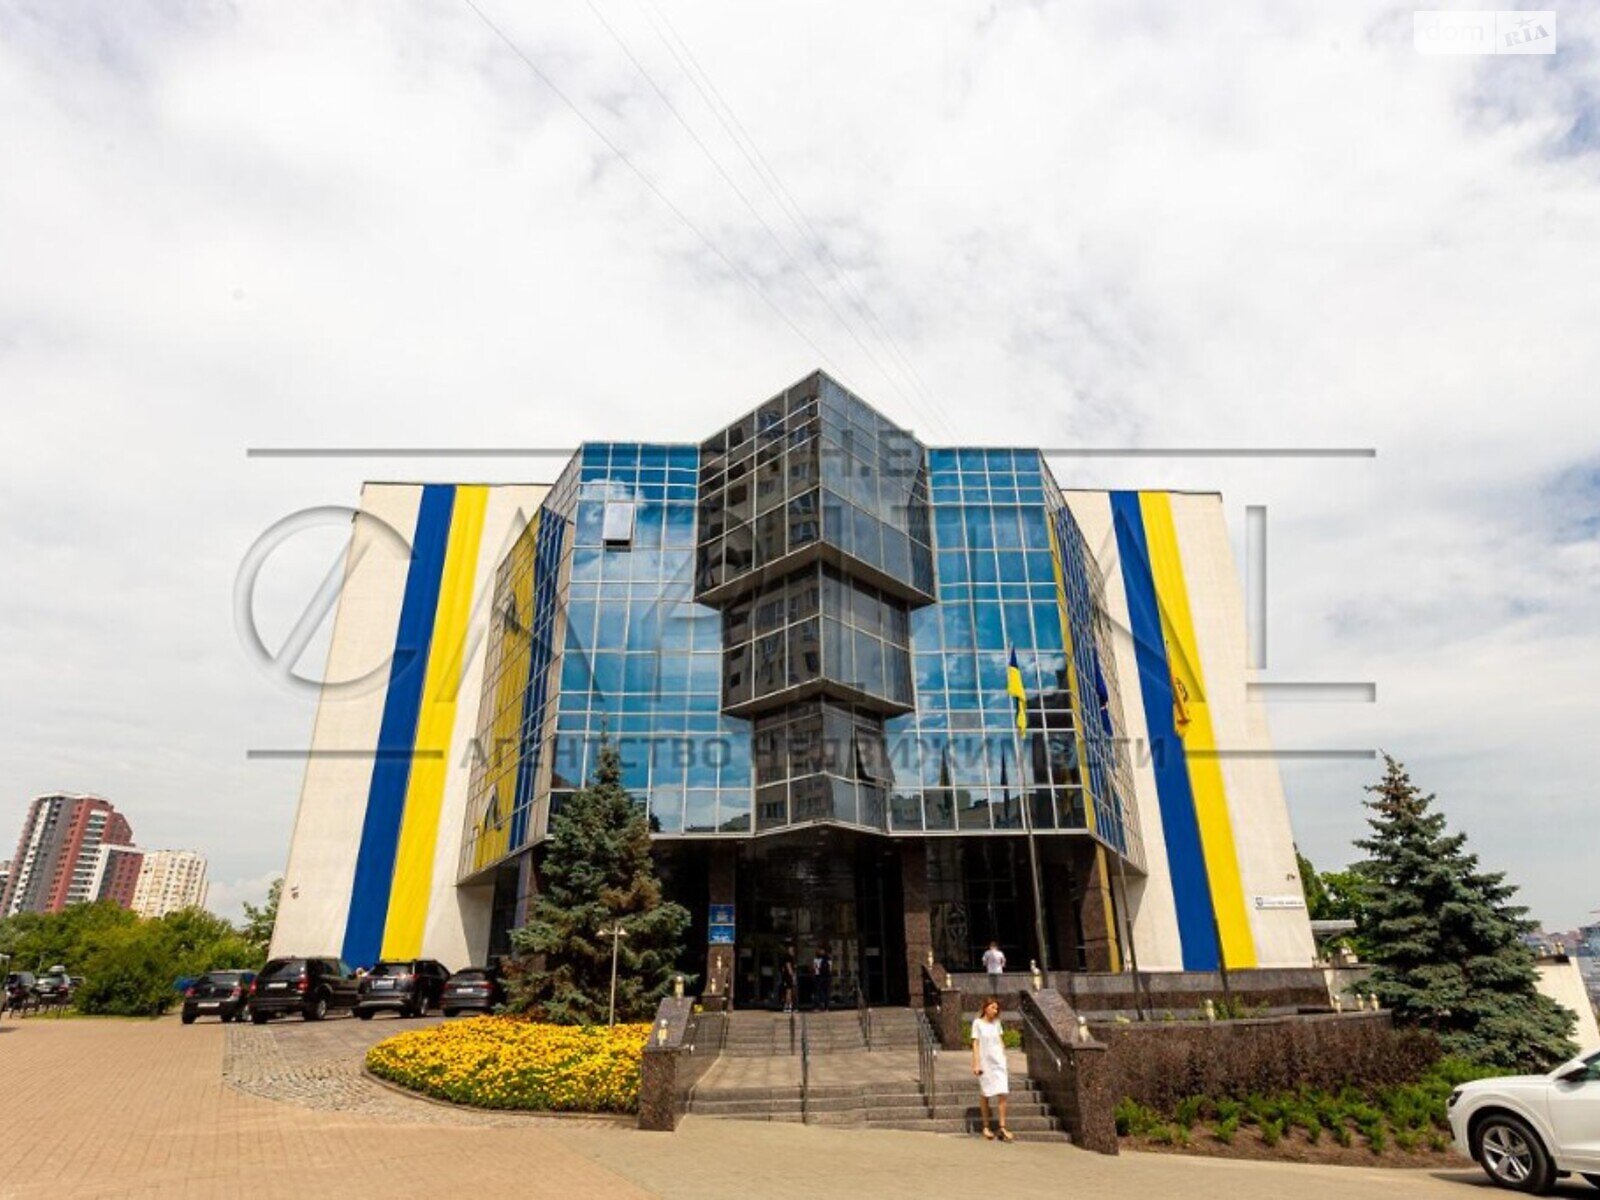 Аренда офисного помещения в Киеве, Голосеевский переулок 42, помещений - 15, этаж - 4 фото 1